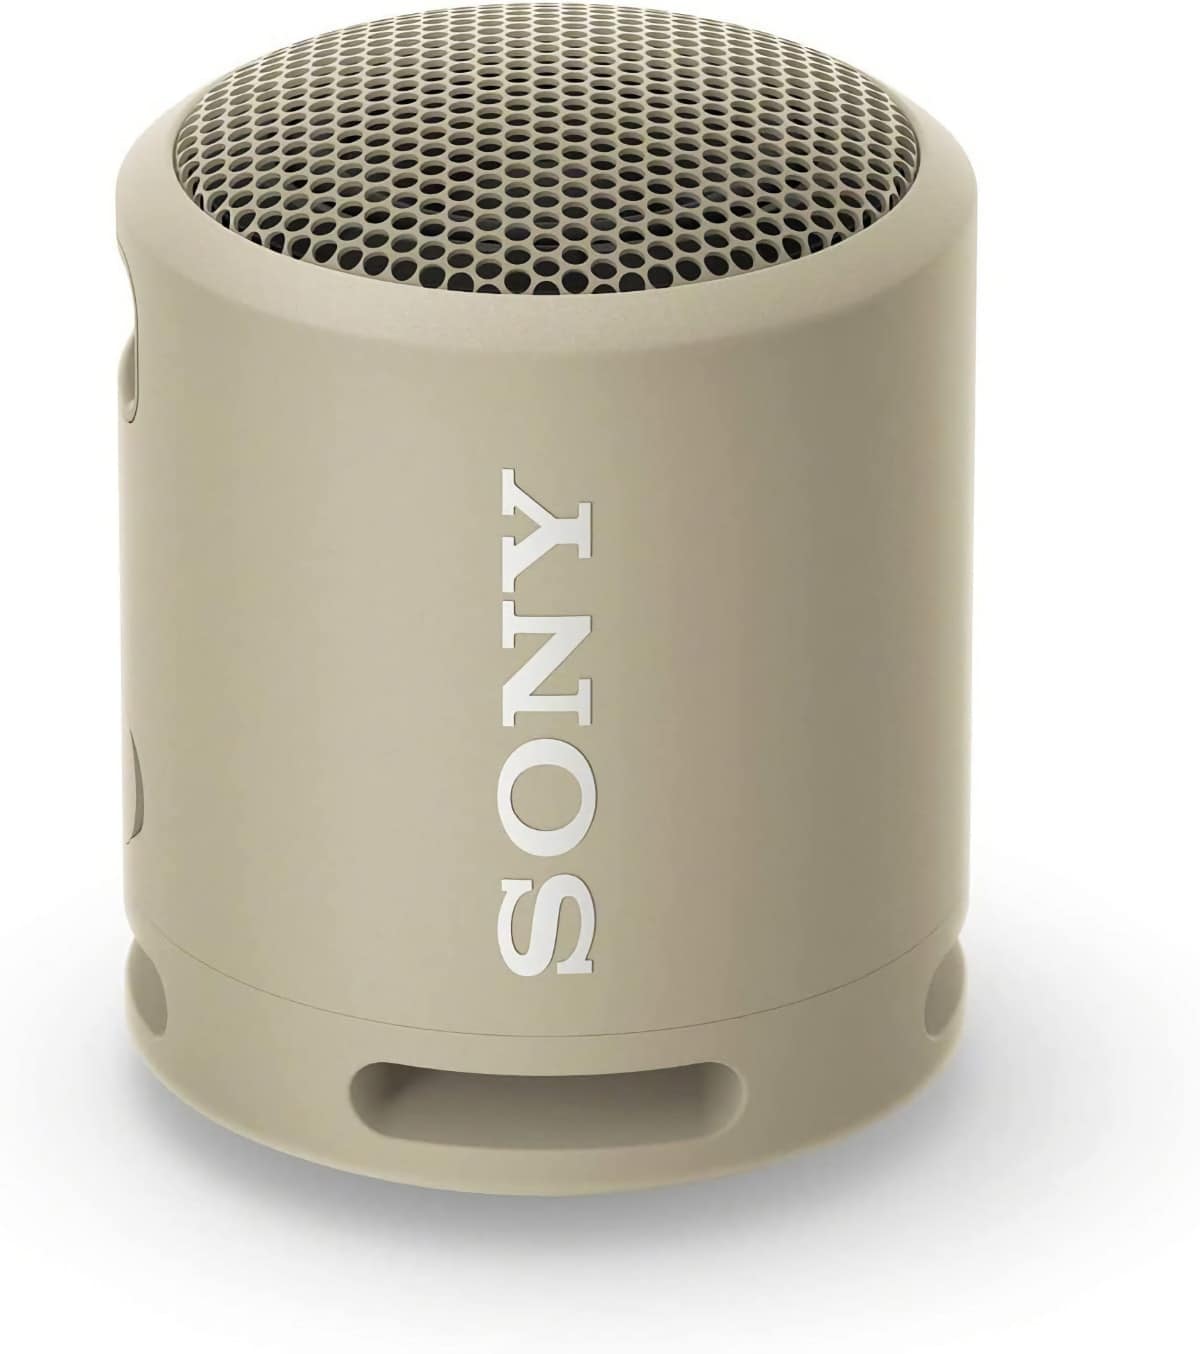 Altavoz portatil bluetooth: Sony SRS-XB13: Para quien busca un altavoz ultraportátil, sencillo y asequible